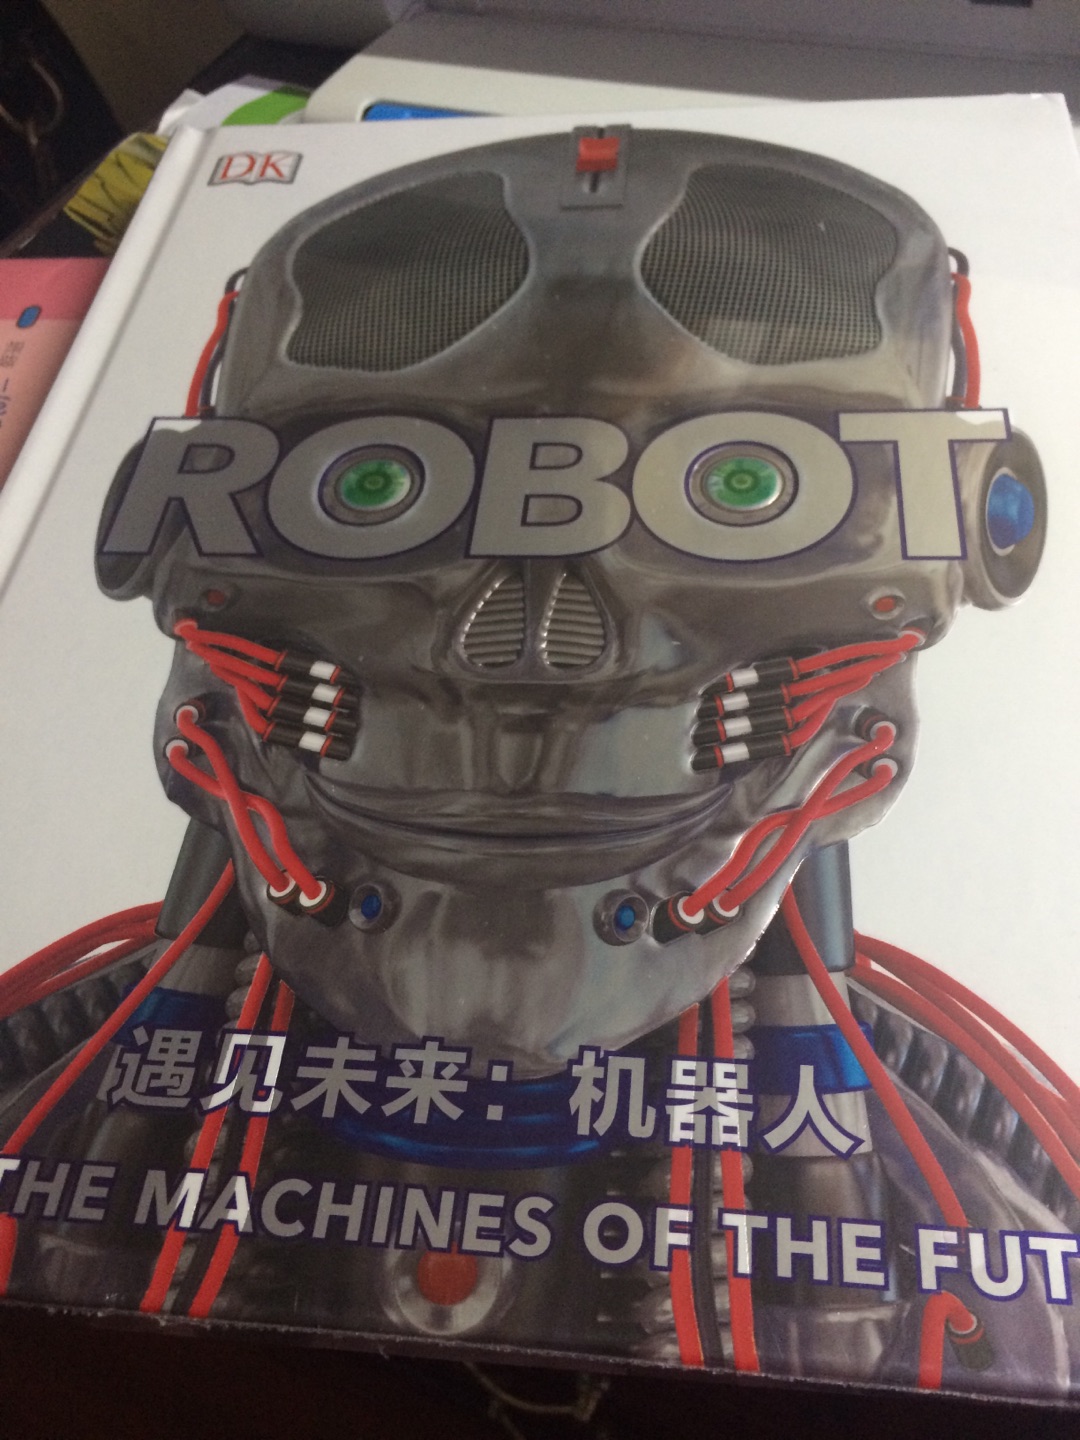 ??DK遇见未来：机器人 DK出品的书一定是精品，果然没有失望。